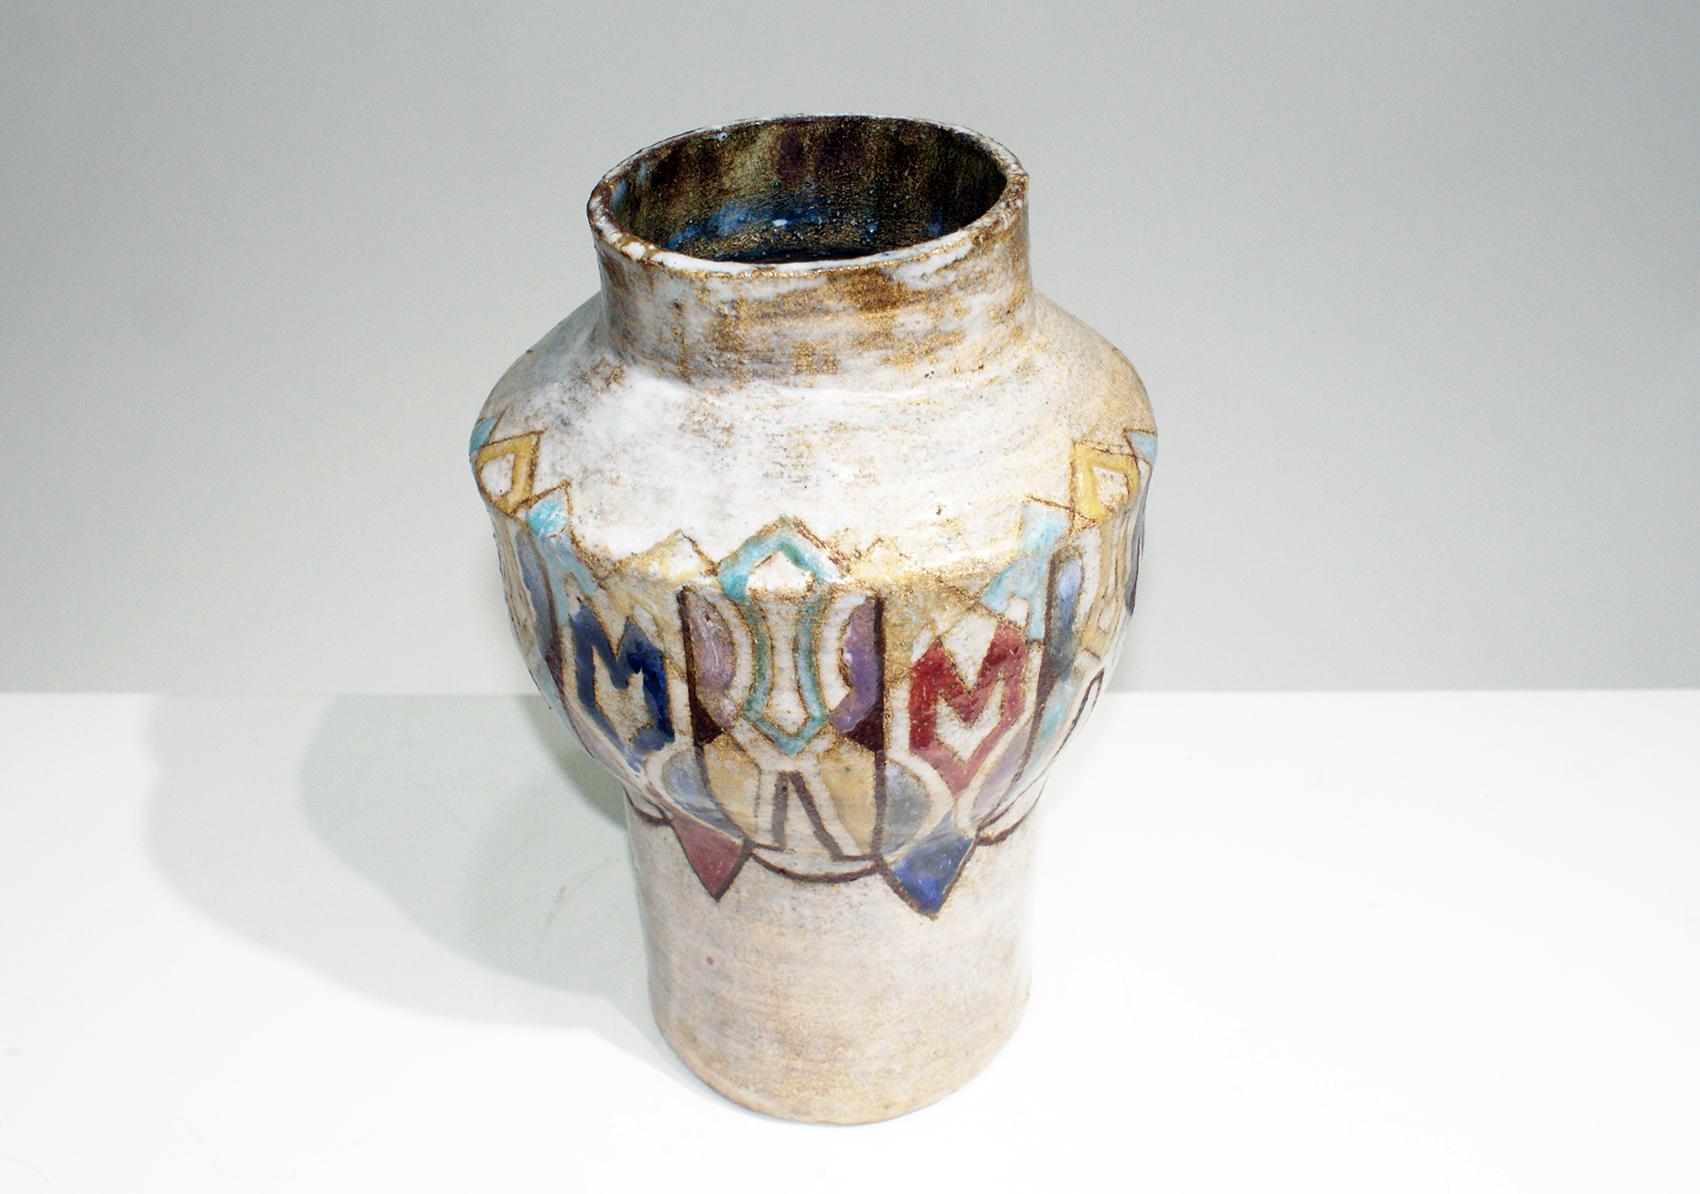 Mid-20th Century Beautiful Colored Ceramic Vase Signed “Vallauris”, circa 1950s